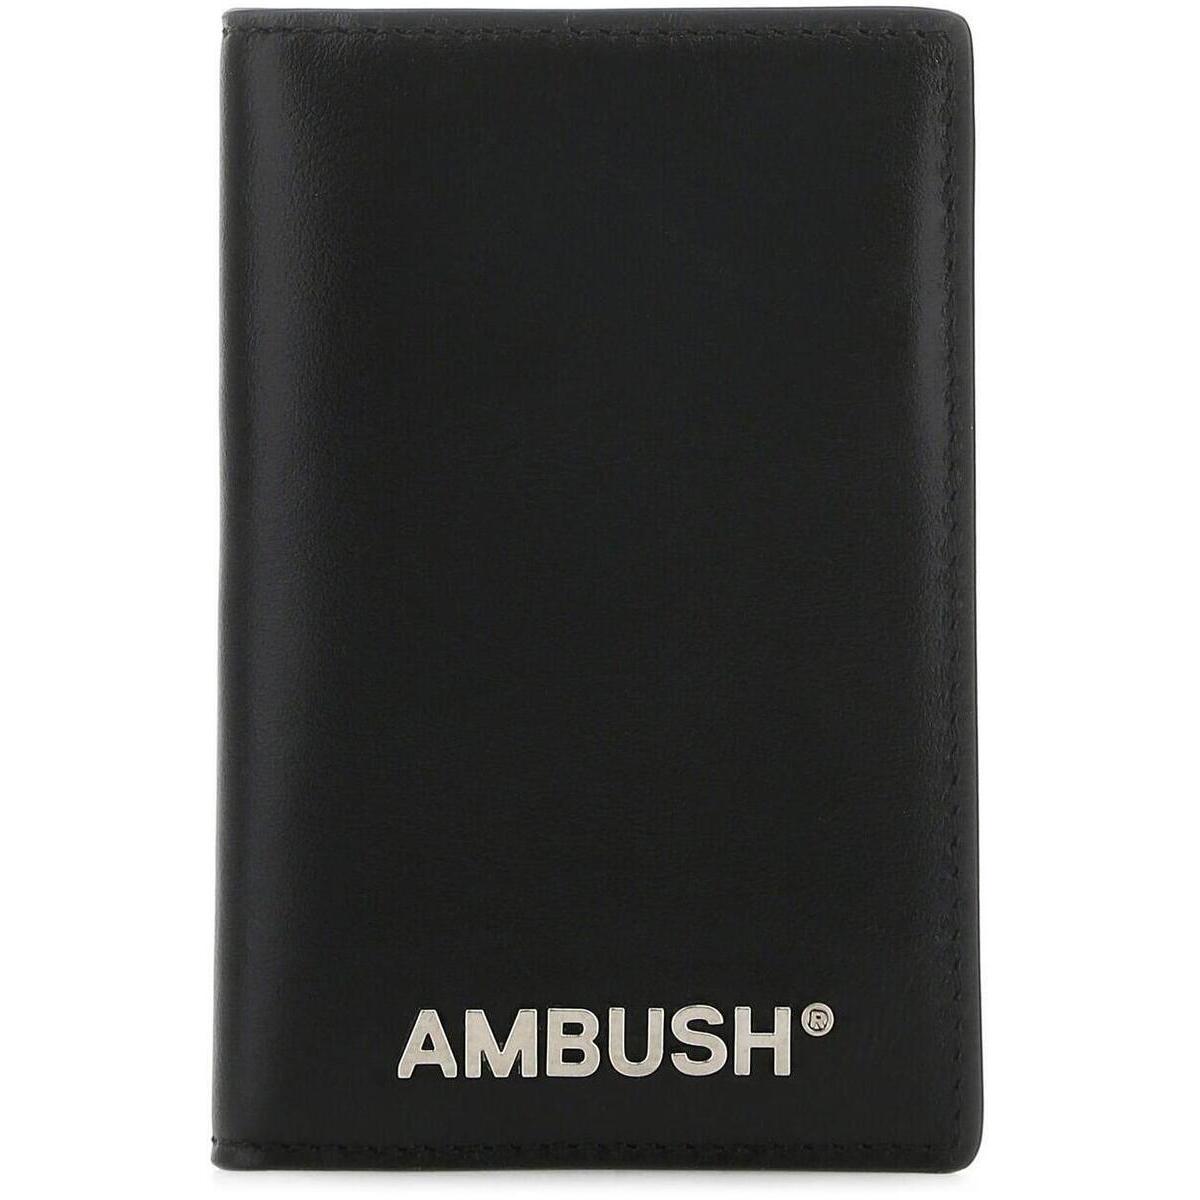 ランキング第1位 AMBUSH アンブッシュ Black/silver 財布 メンズ 秋冬